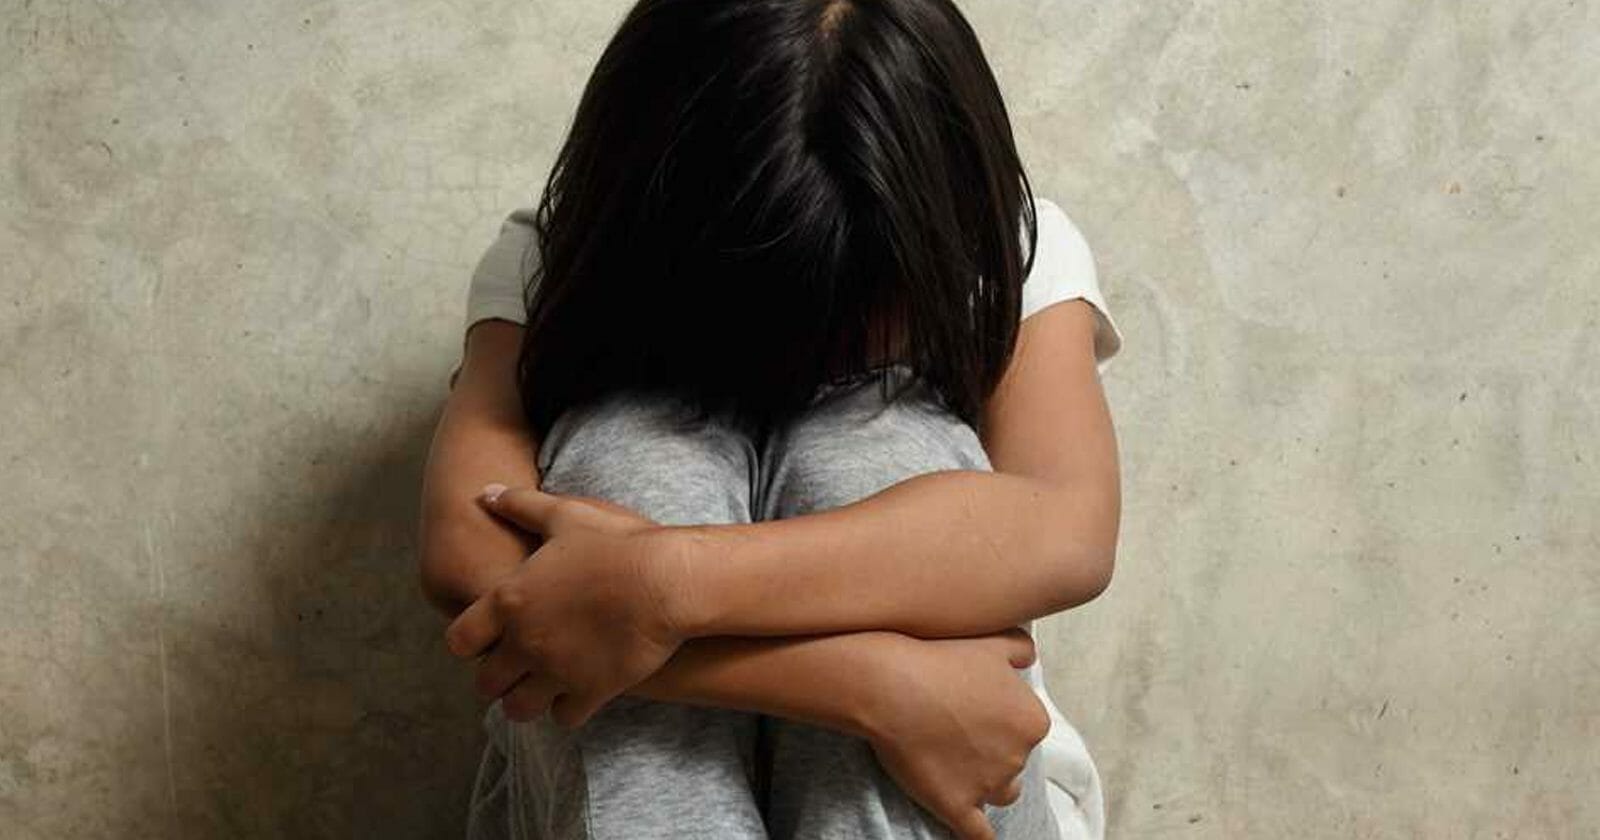 تعرض طفلة لجريمتي اغتصاب في بريطانيا watanserb.com